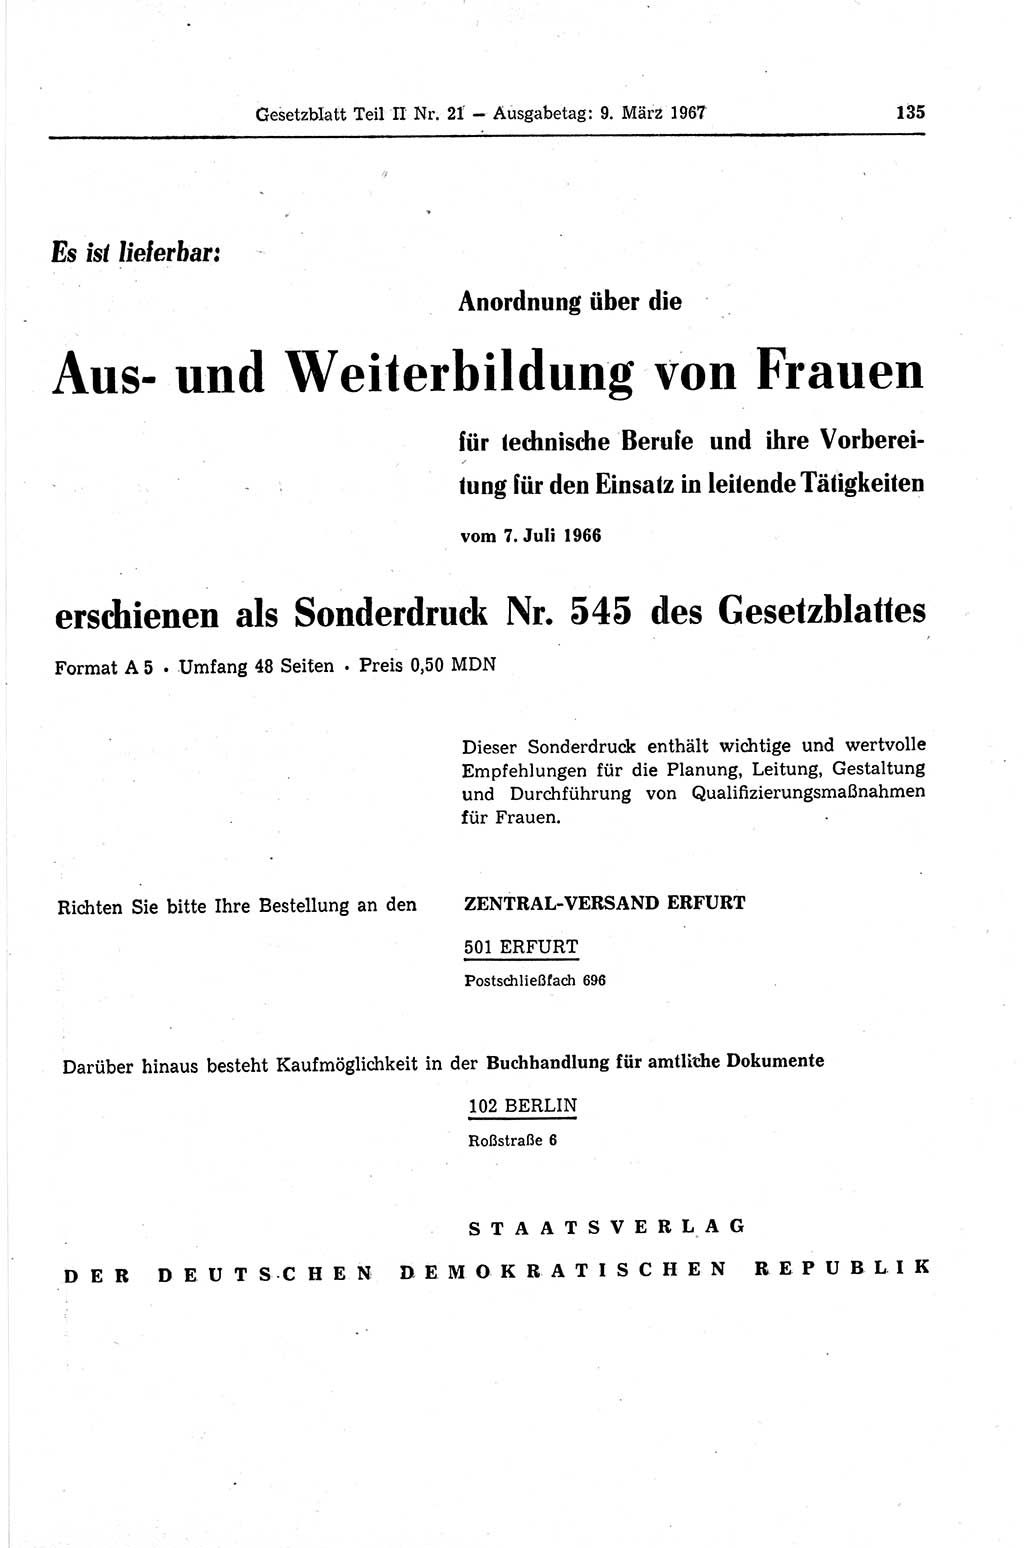 Gesetzblatt (GBl.) der Deutschen Demokratischen Republik (DDR) Teil ⅠⅠ 1967, Seite 135 (GBl. DDR ⅠⅠ 1967, S. 135)